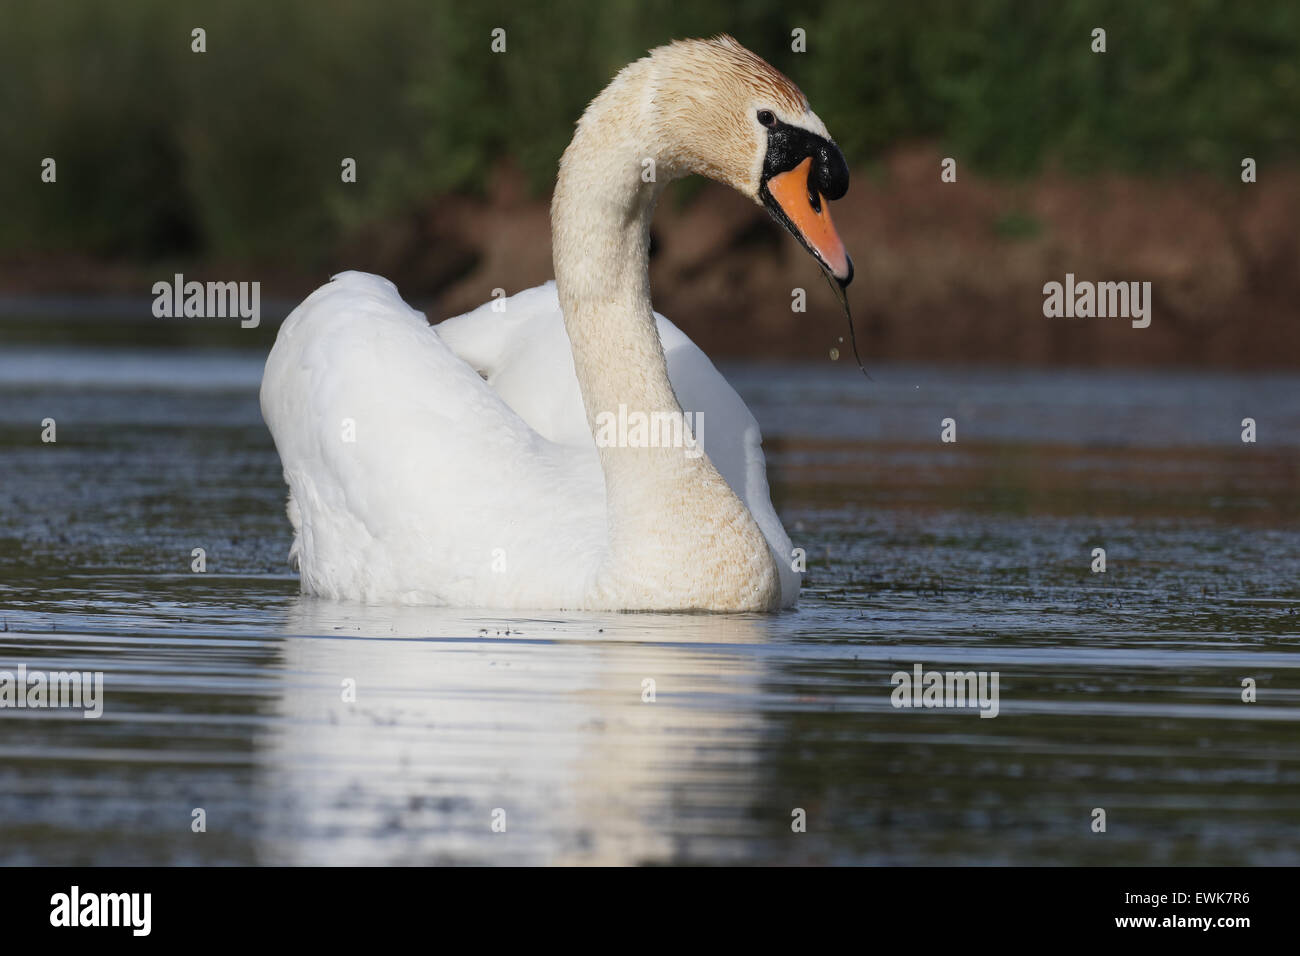 Cygne muet, Cygnus olor, swan unique sur l'eau, dans le Warwickshire, Juin 2015 Banque D'Images